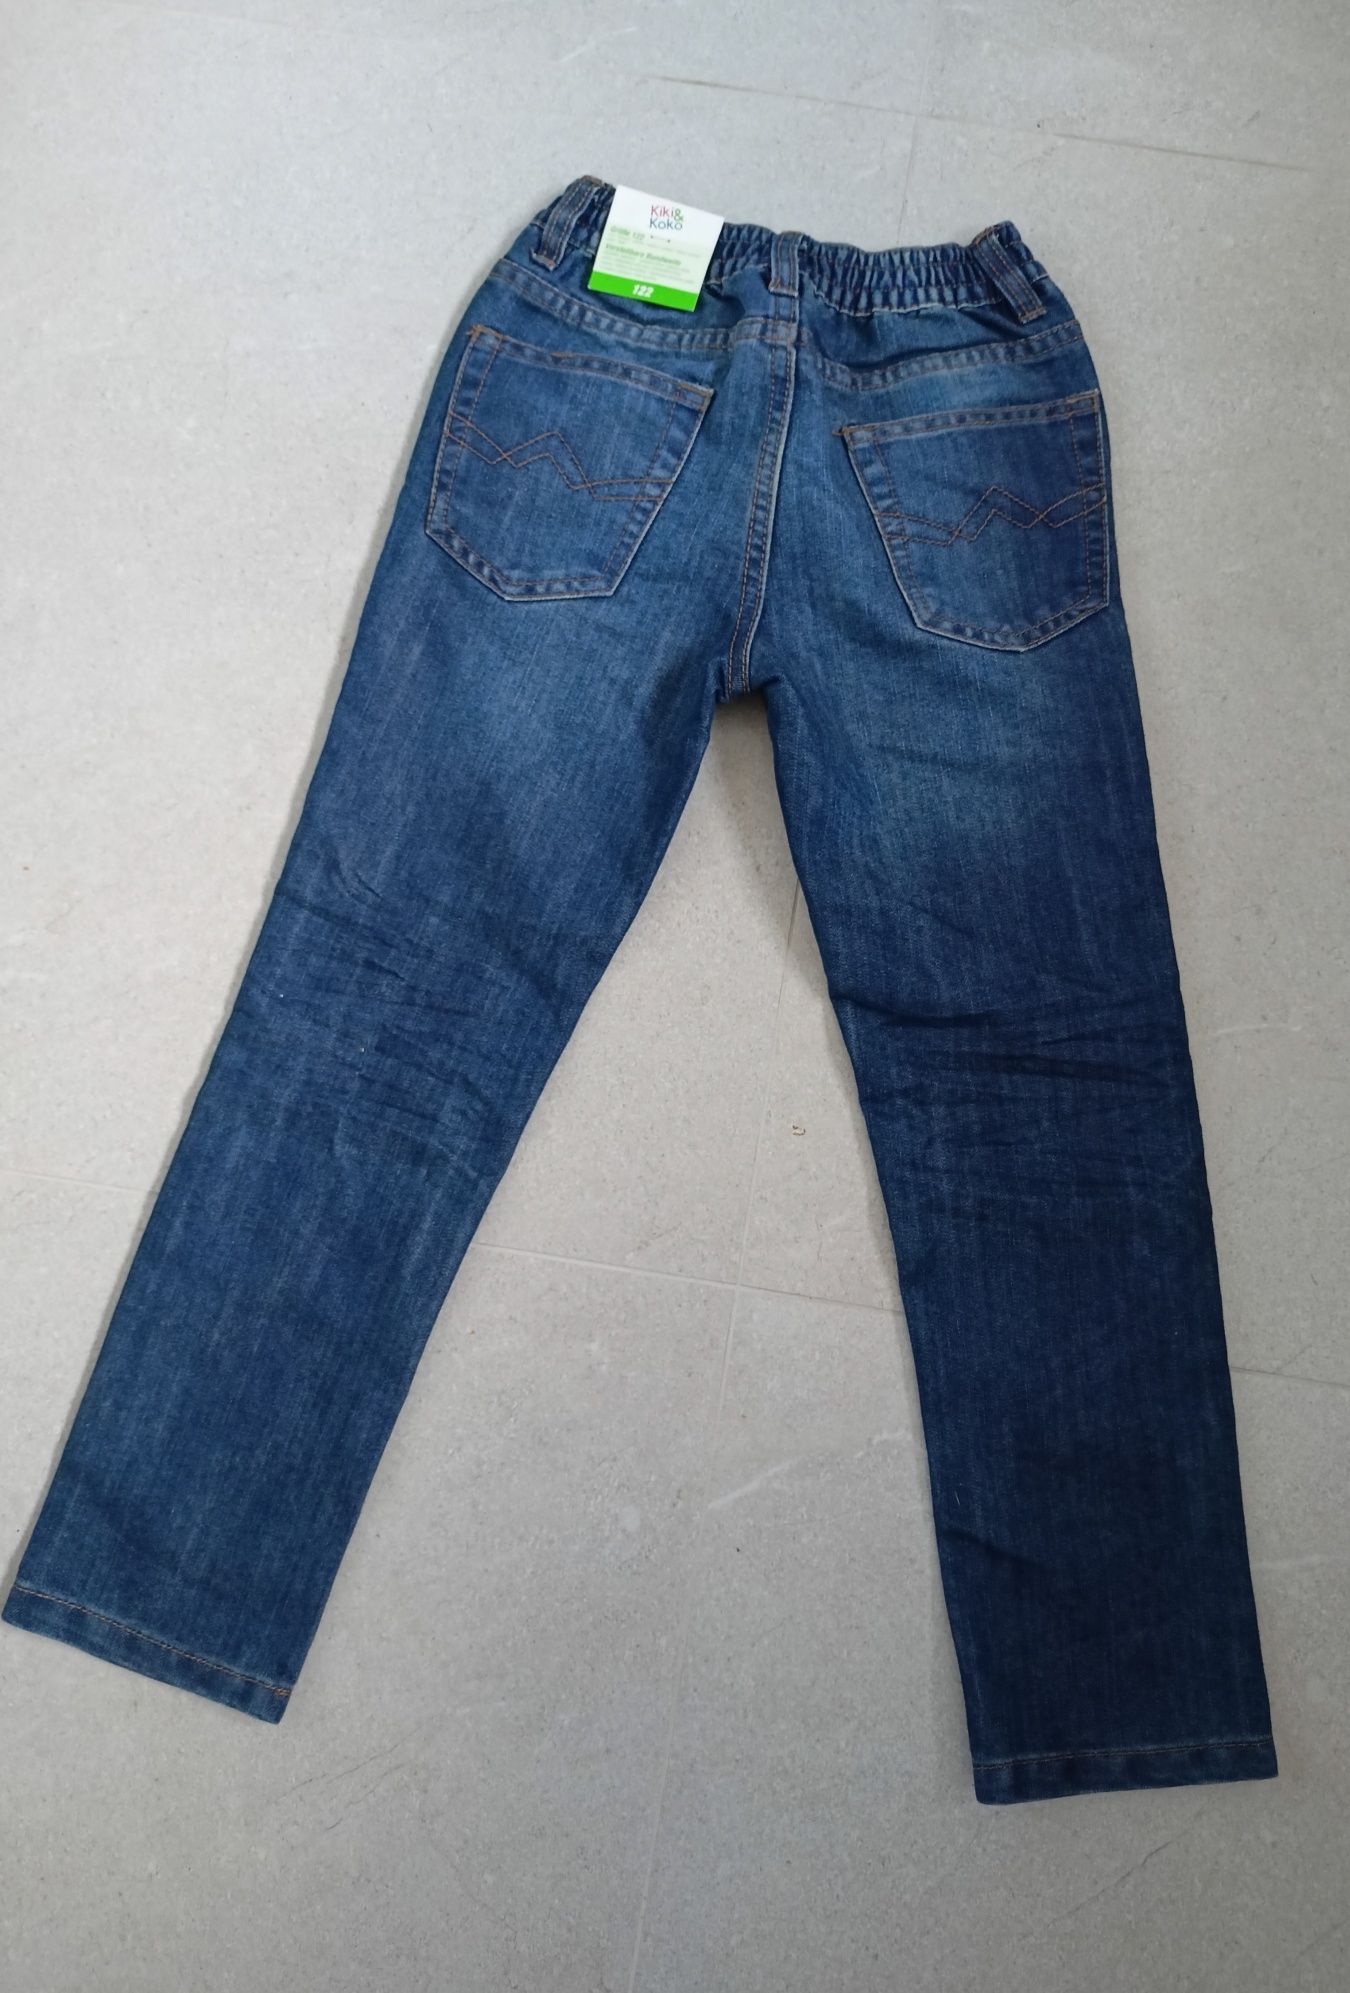 Spodnie jeansowe kiki &koko rozm 122